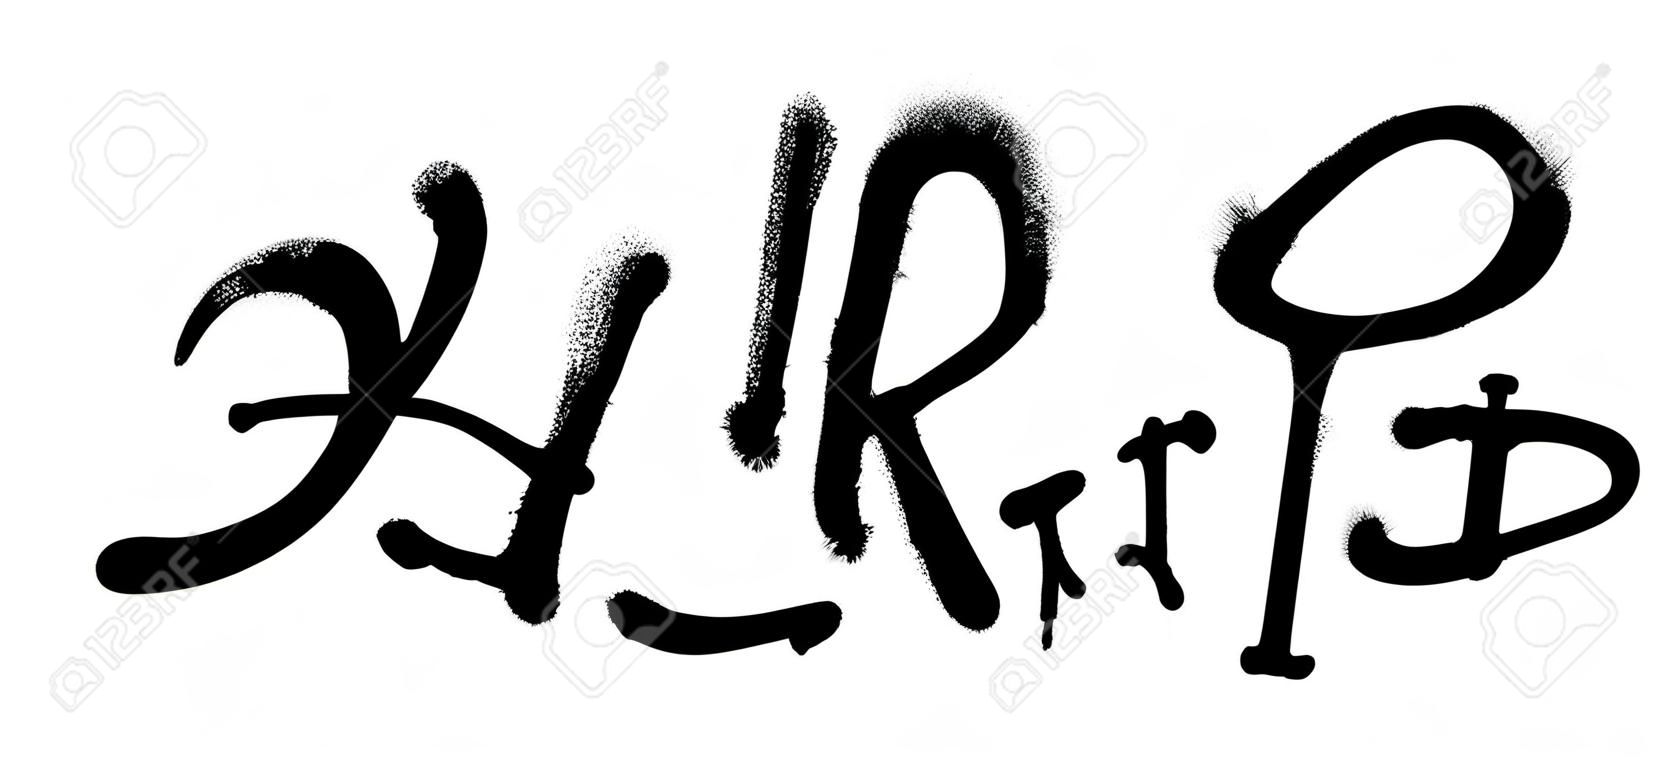 Graffiti spray font alphabet. Vector illustration